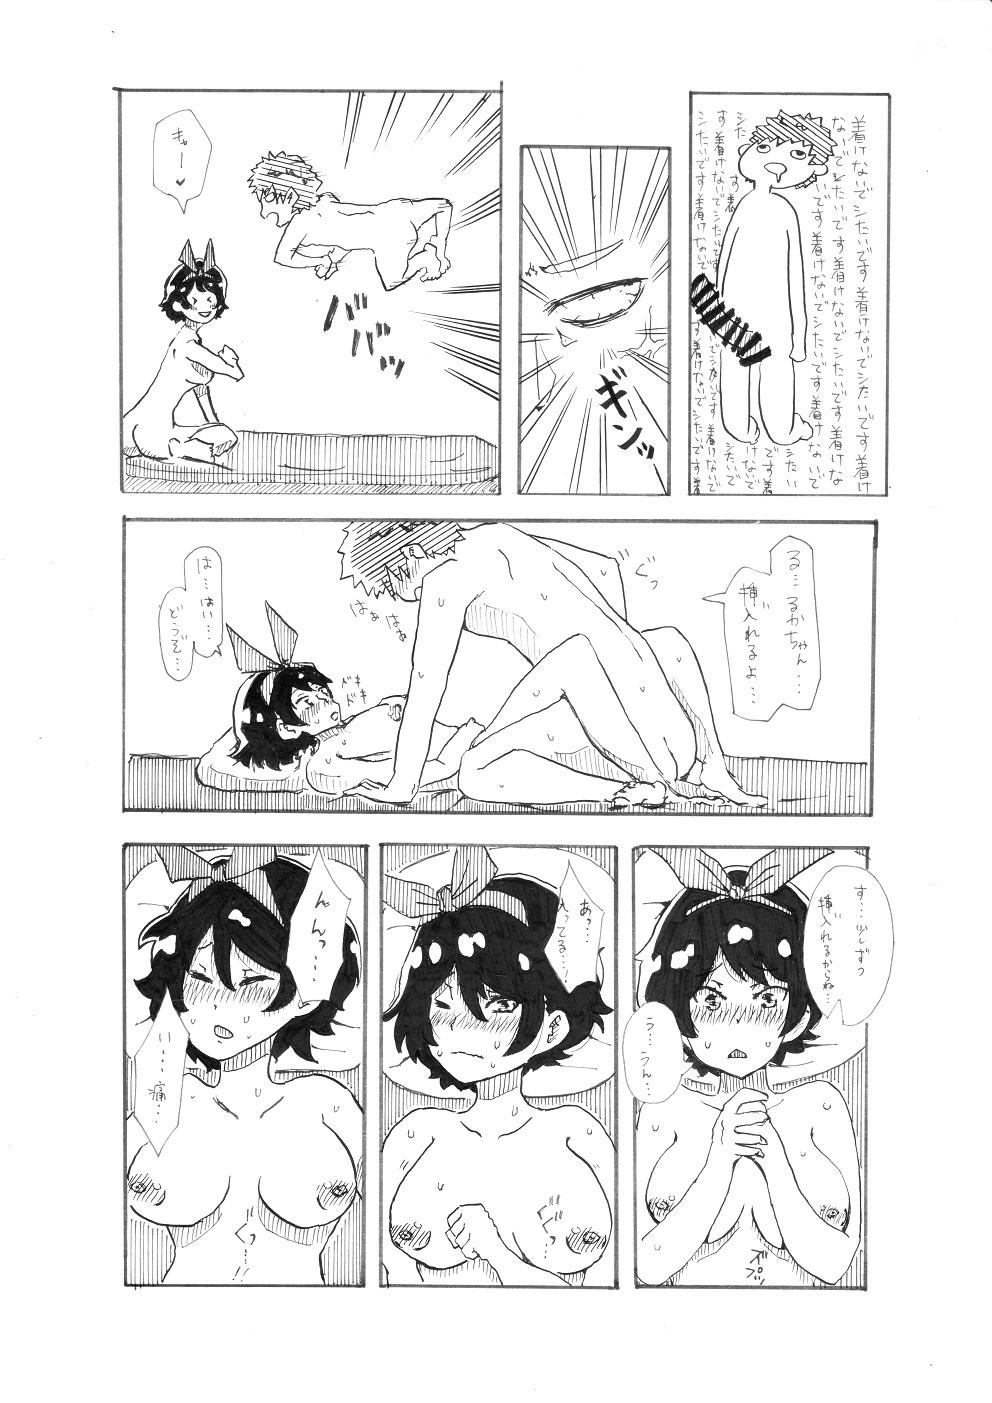 [Pixiv] ユッキーさん | yuckey nekoinu (86798363) [るかちゃんとエッチするだけの漫画] | Rent A Girlfriend 10